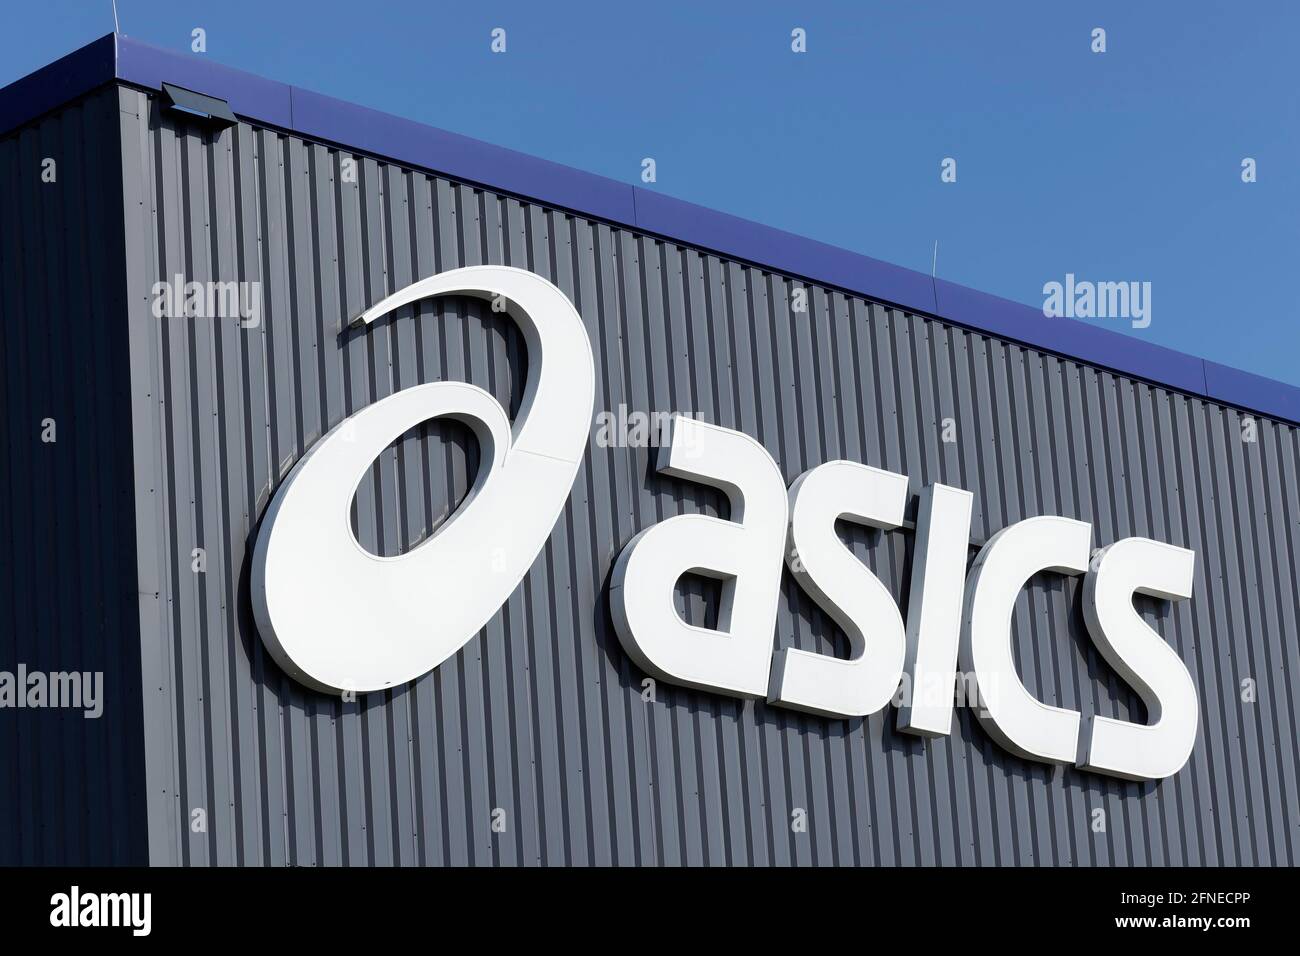 Logo Asics am deutschen Hauptsitz, japanische Sportschuh- und  Bekleidungsmarke, Krefeld, Nordrhein-Westfalen, Deutschland Stockfotografie  - Alamy